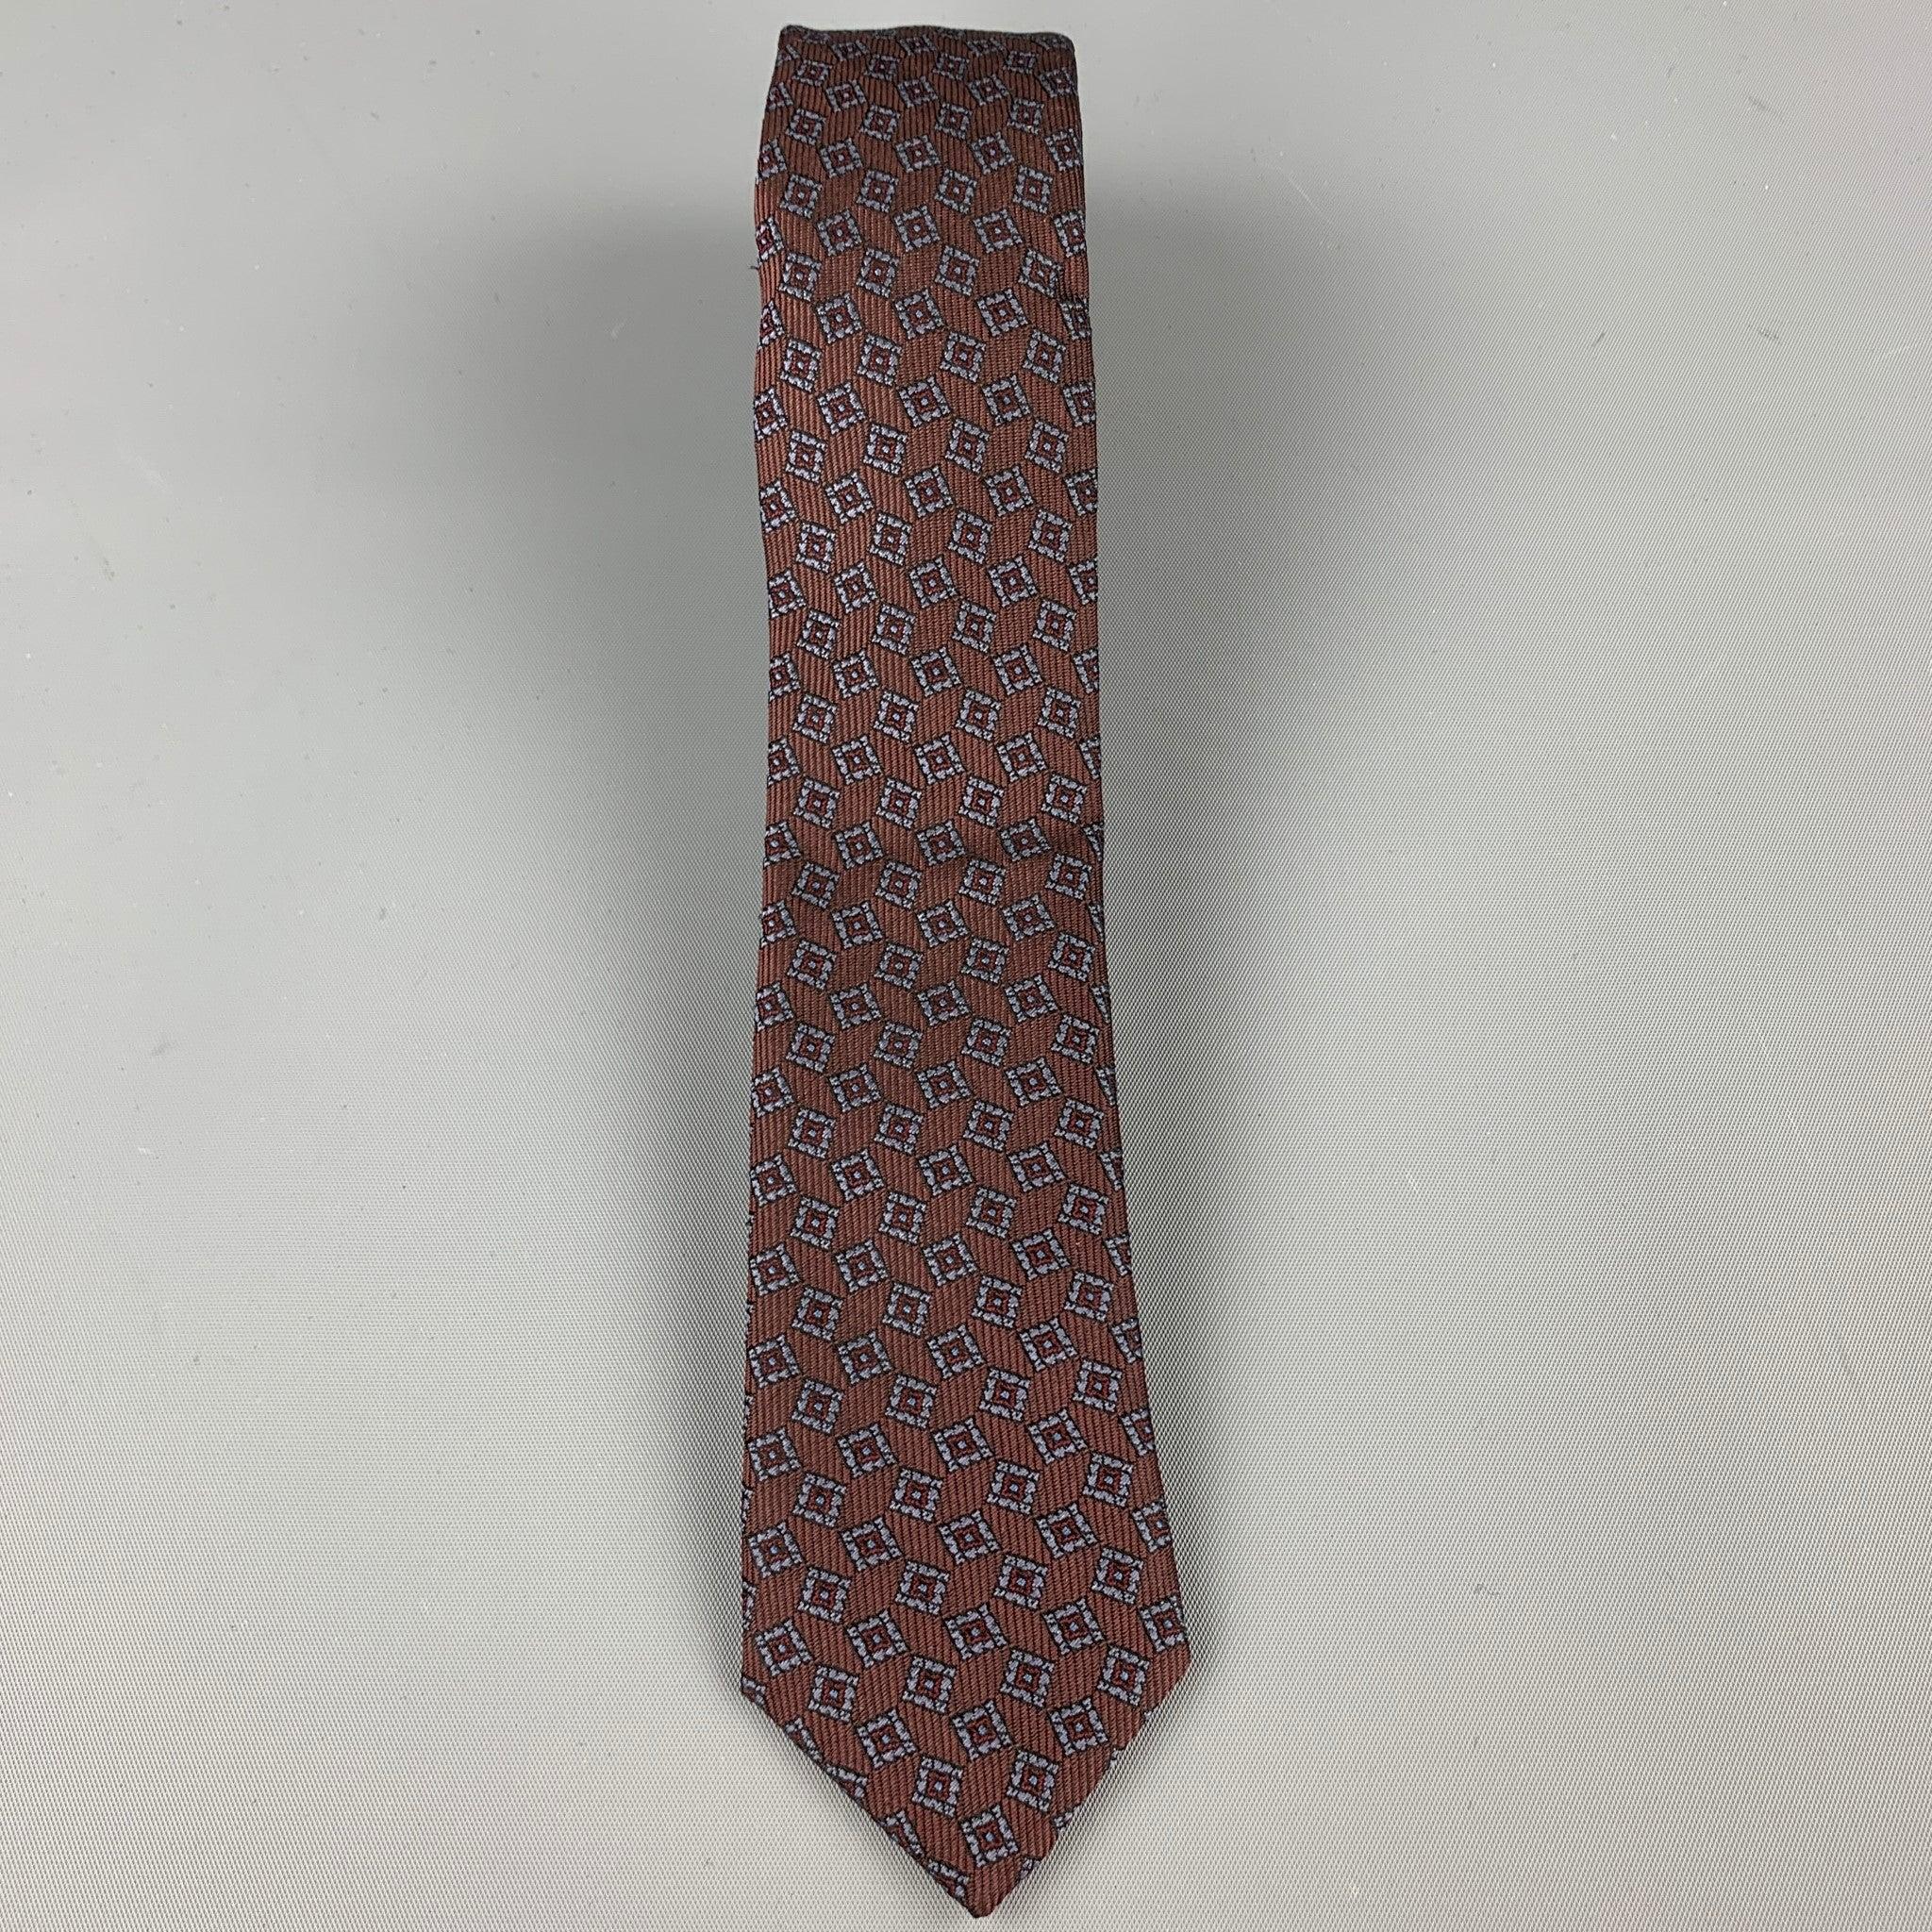 BURBERRY PRORSUM
La cravate skinny est en soie marron taupe avec un imprimé de carrés géométriques marine.
 Fabriqué en Angleterre. Très bon état.
Largeur : 2 pouces 
  
  
Référence : 68465
Catégorie : Cravate
Plus de détails
    
Marque : 